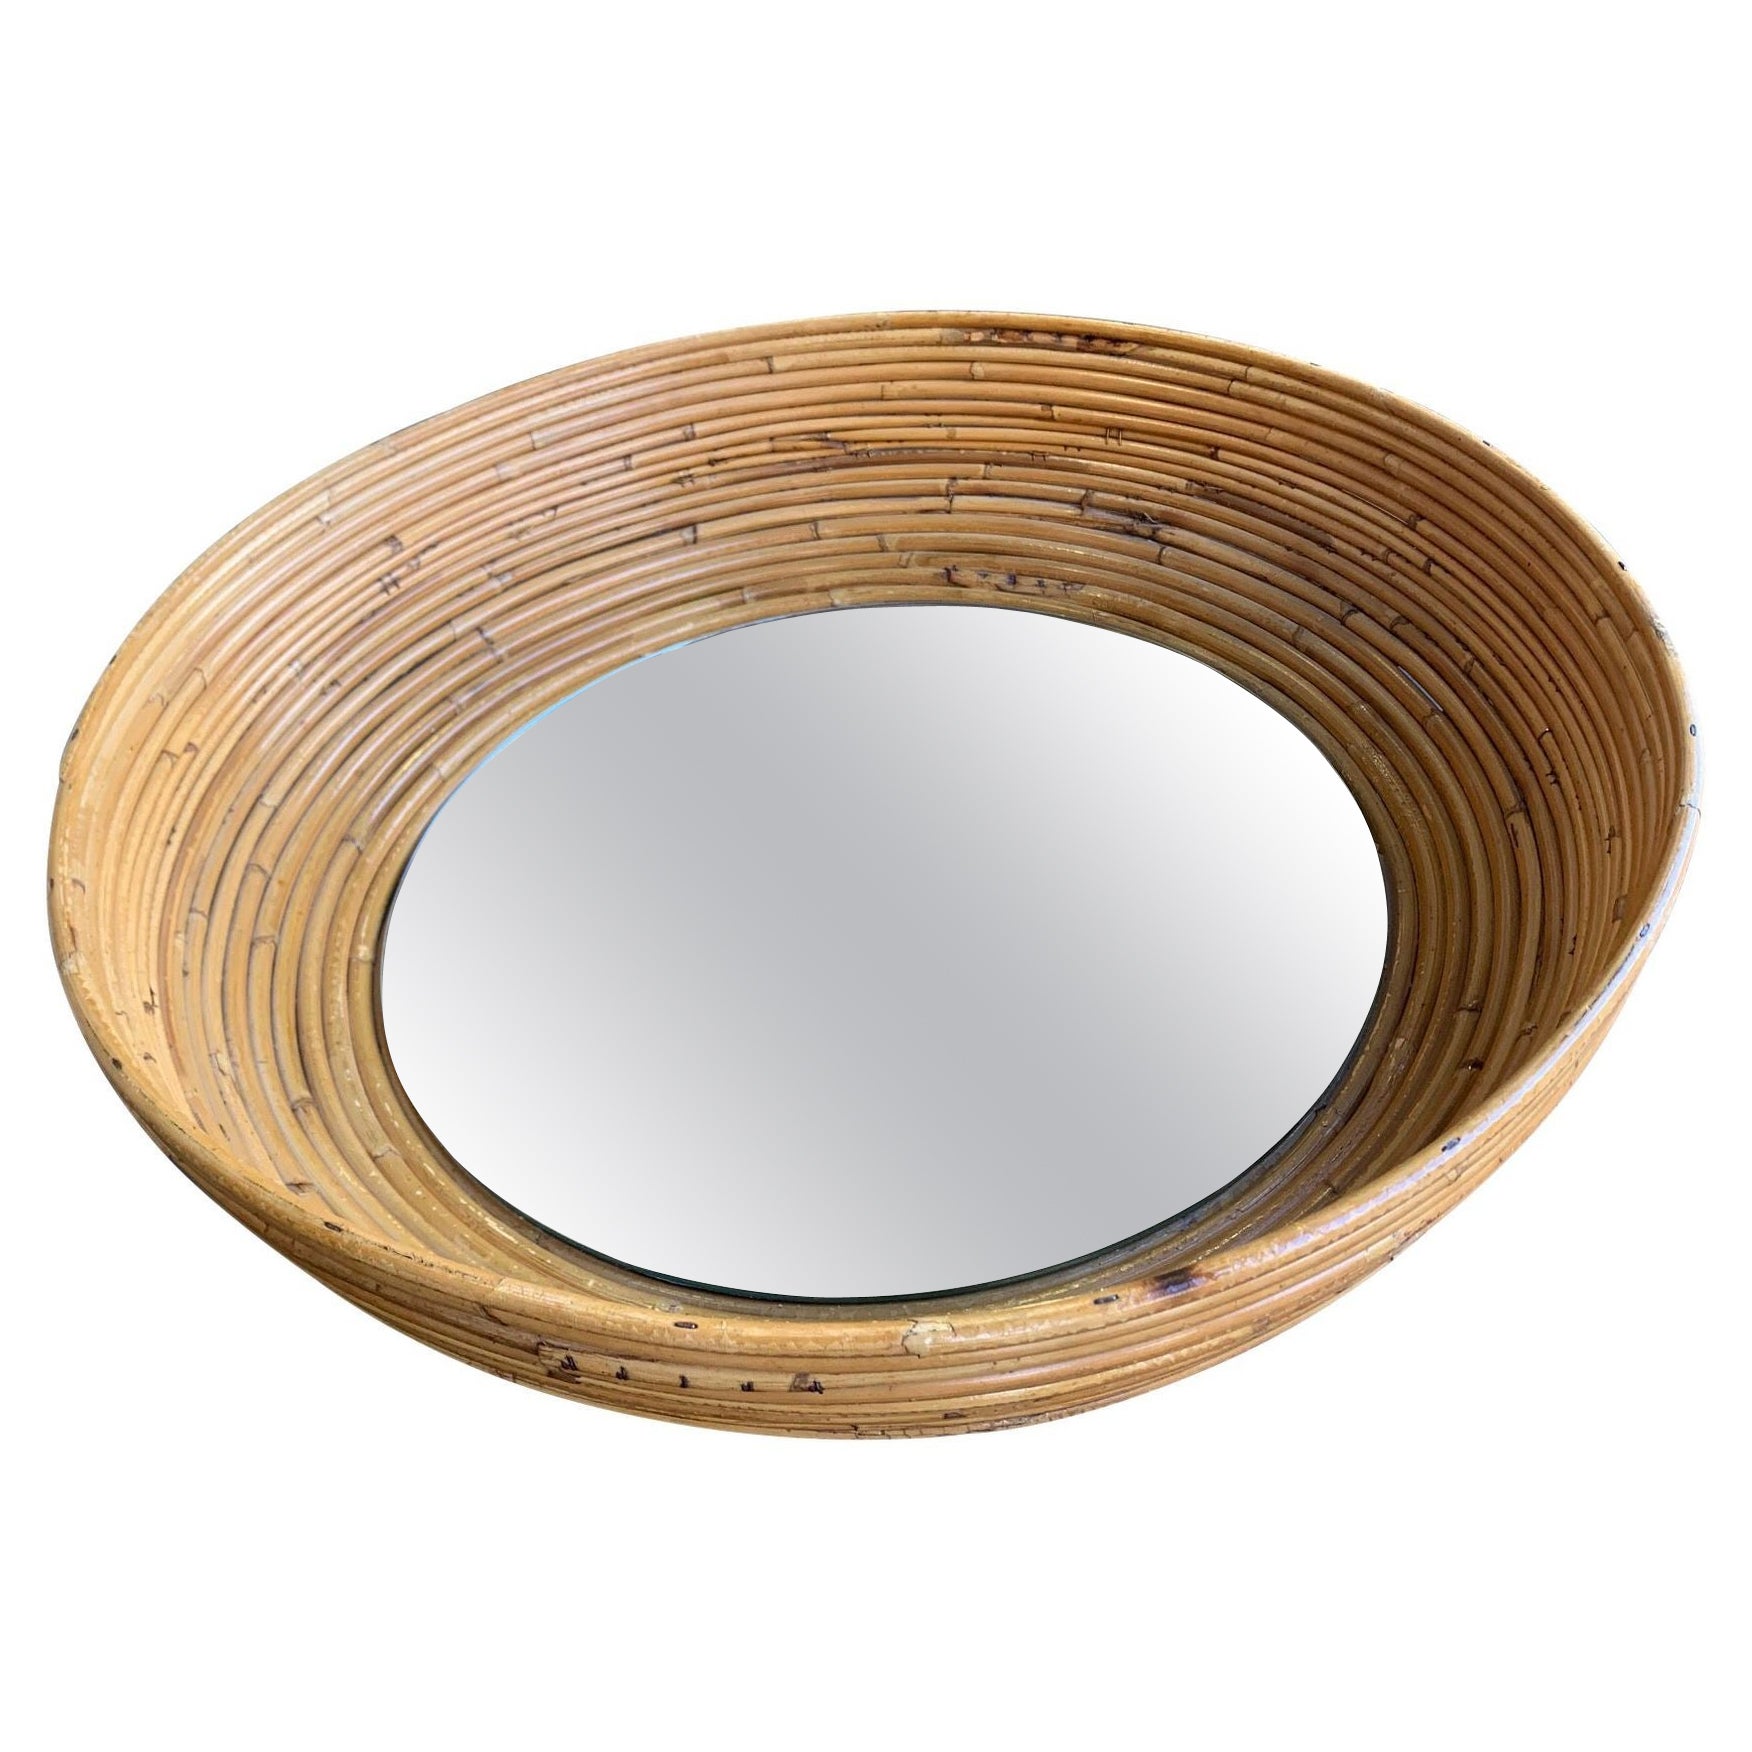 1960s French Riviera Circular Bowl Shaped Bamboo Mirror